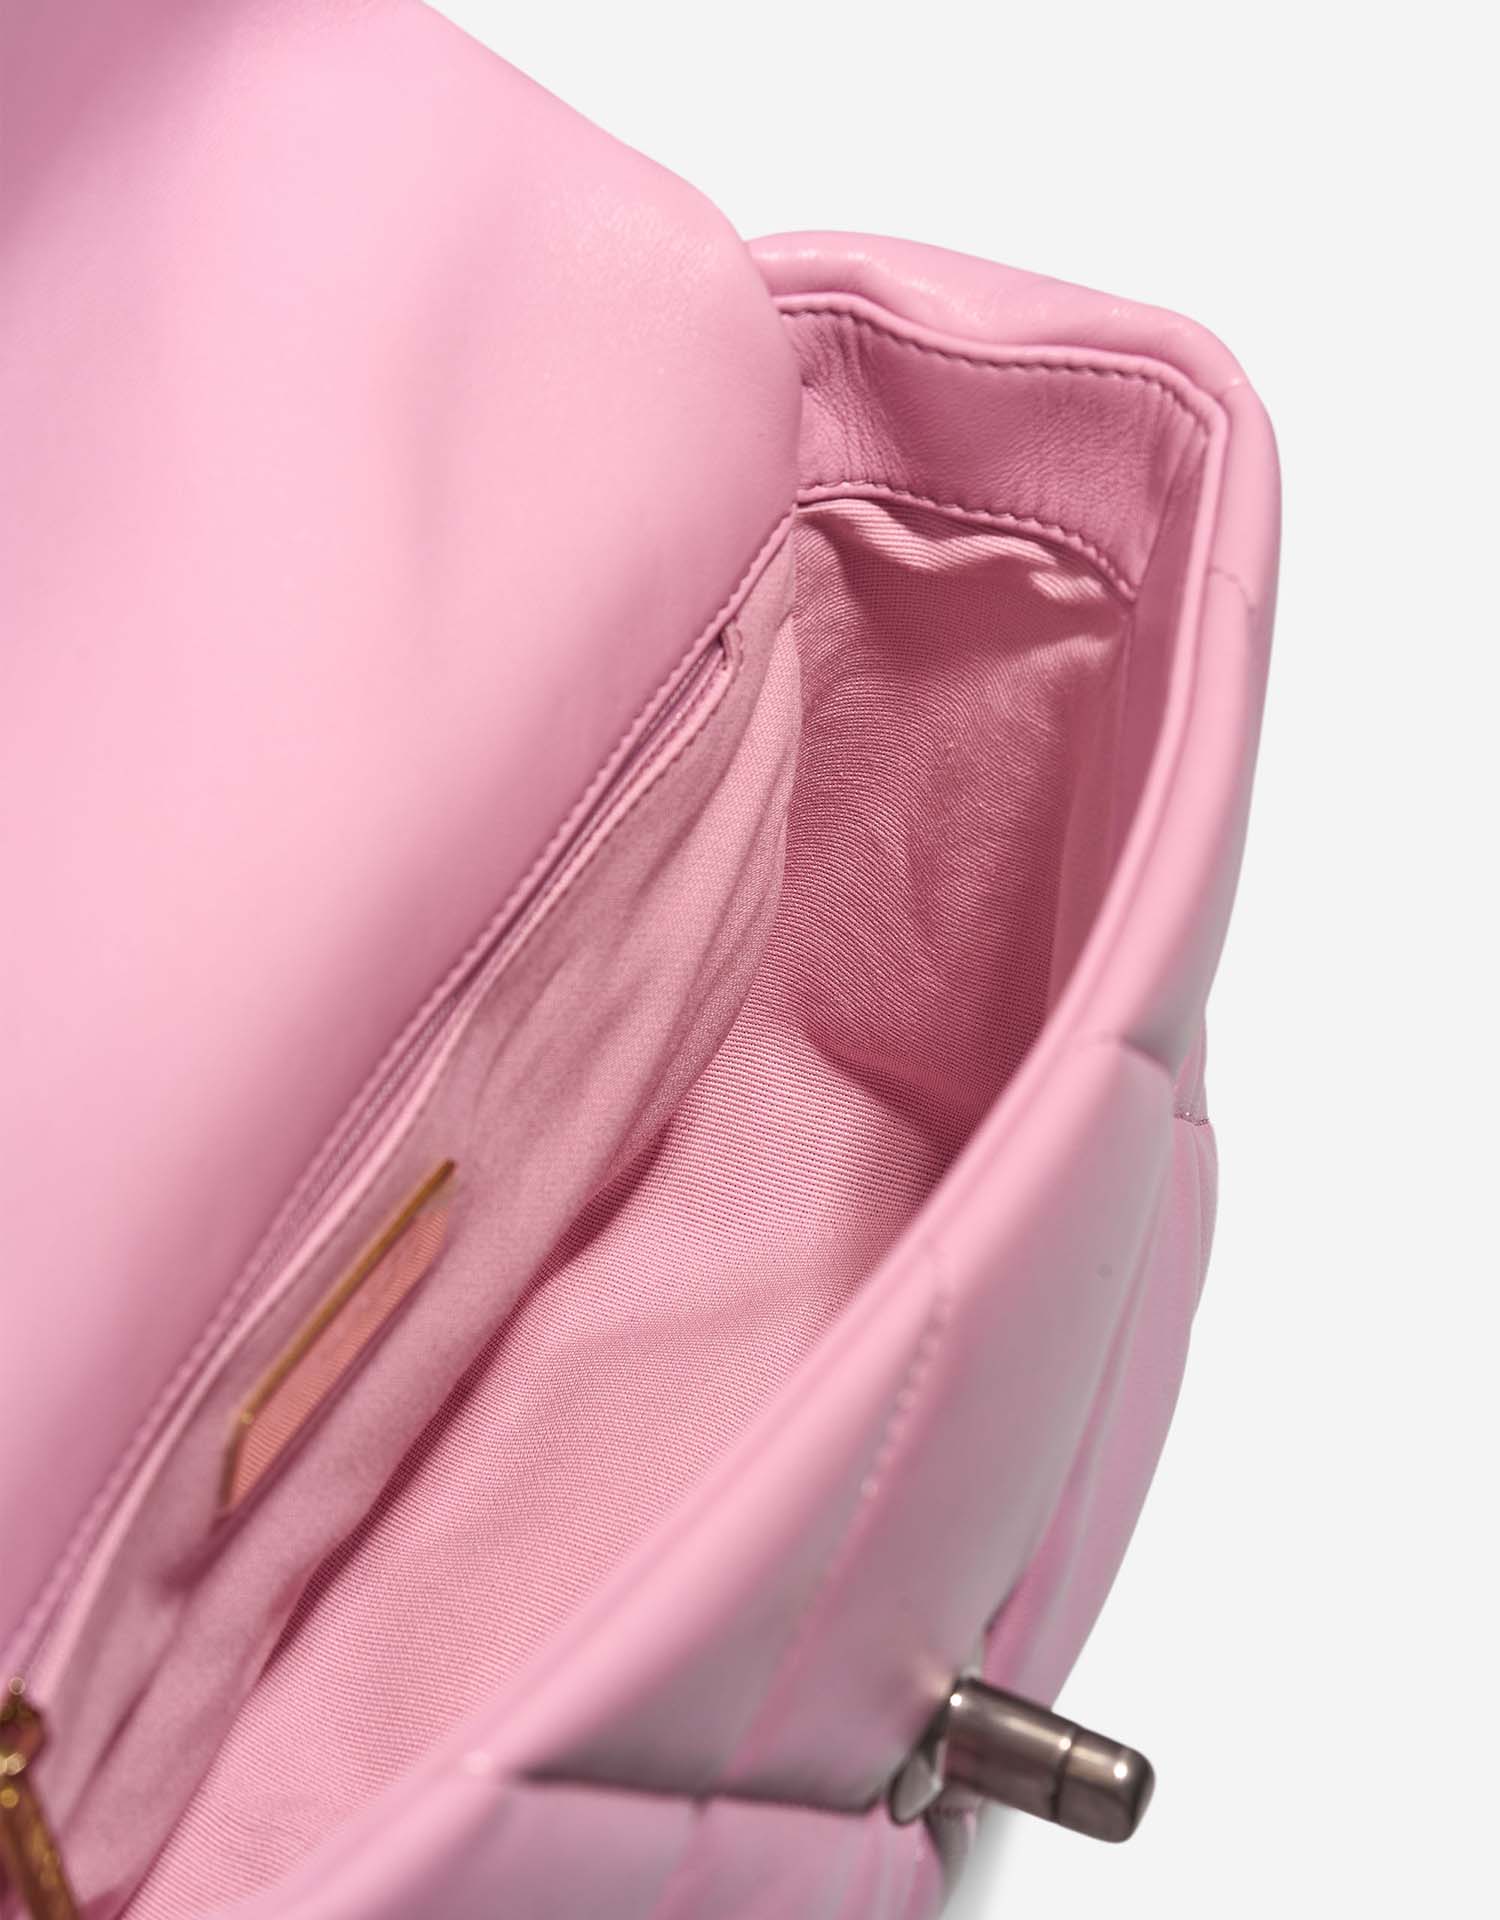 Chanel 19 Flapbag Pink Inside  | Sell your designer bag on Saclab.com